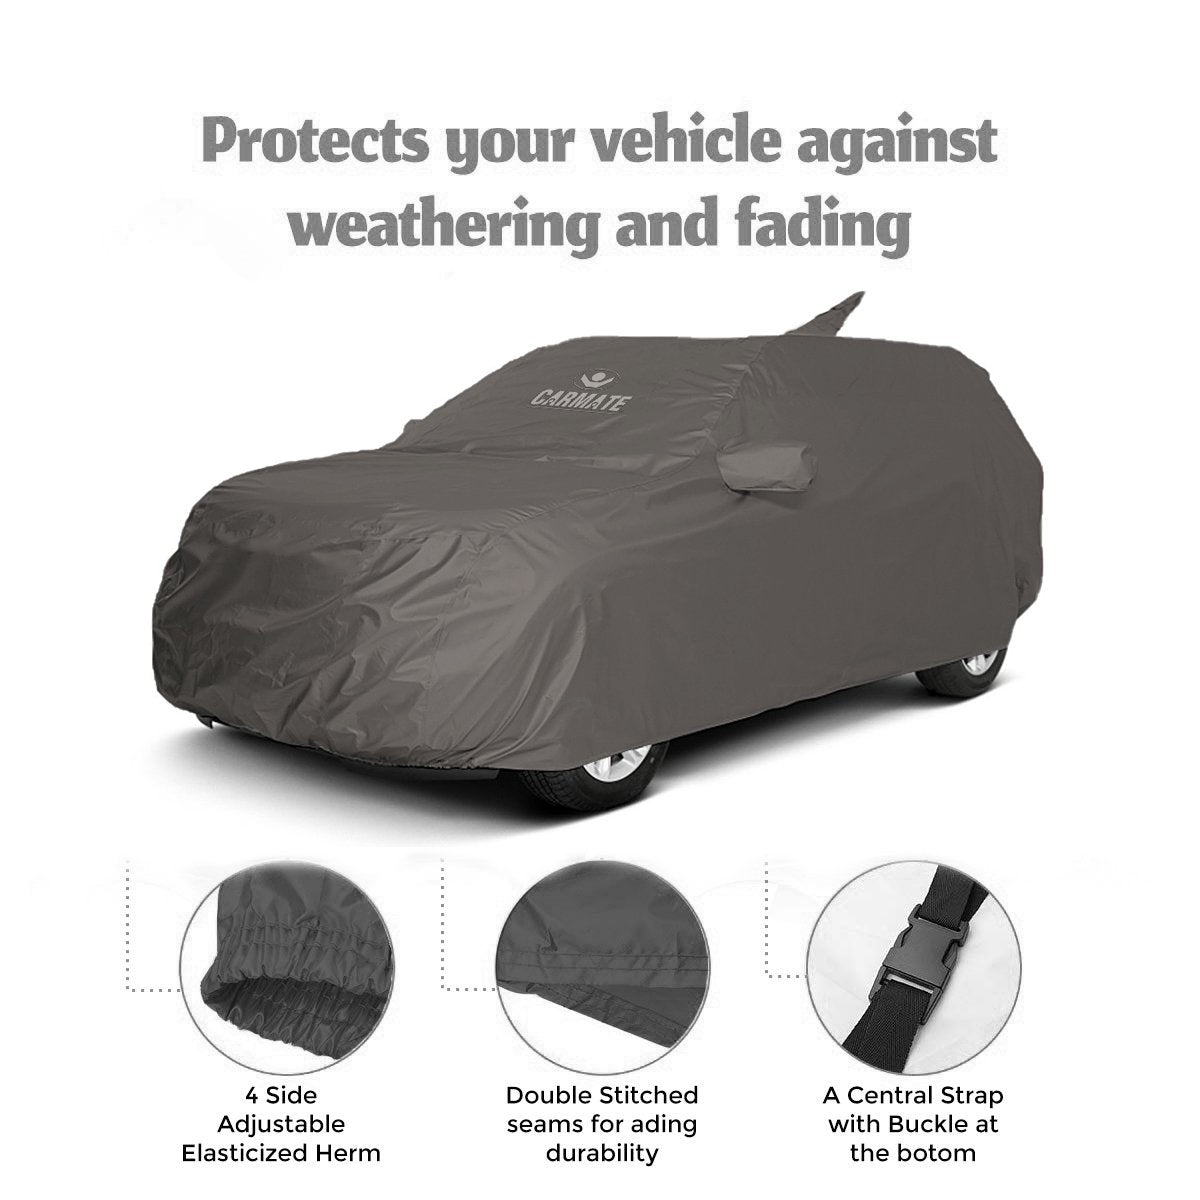 Carmate Car Body Cover 100% Waterproof Pride (Grey) for Hyundai - Santro Xing - CARMATE®